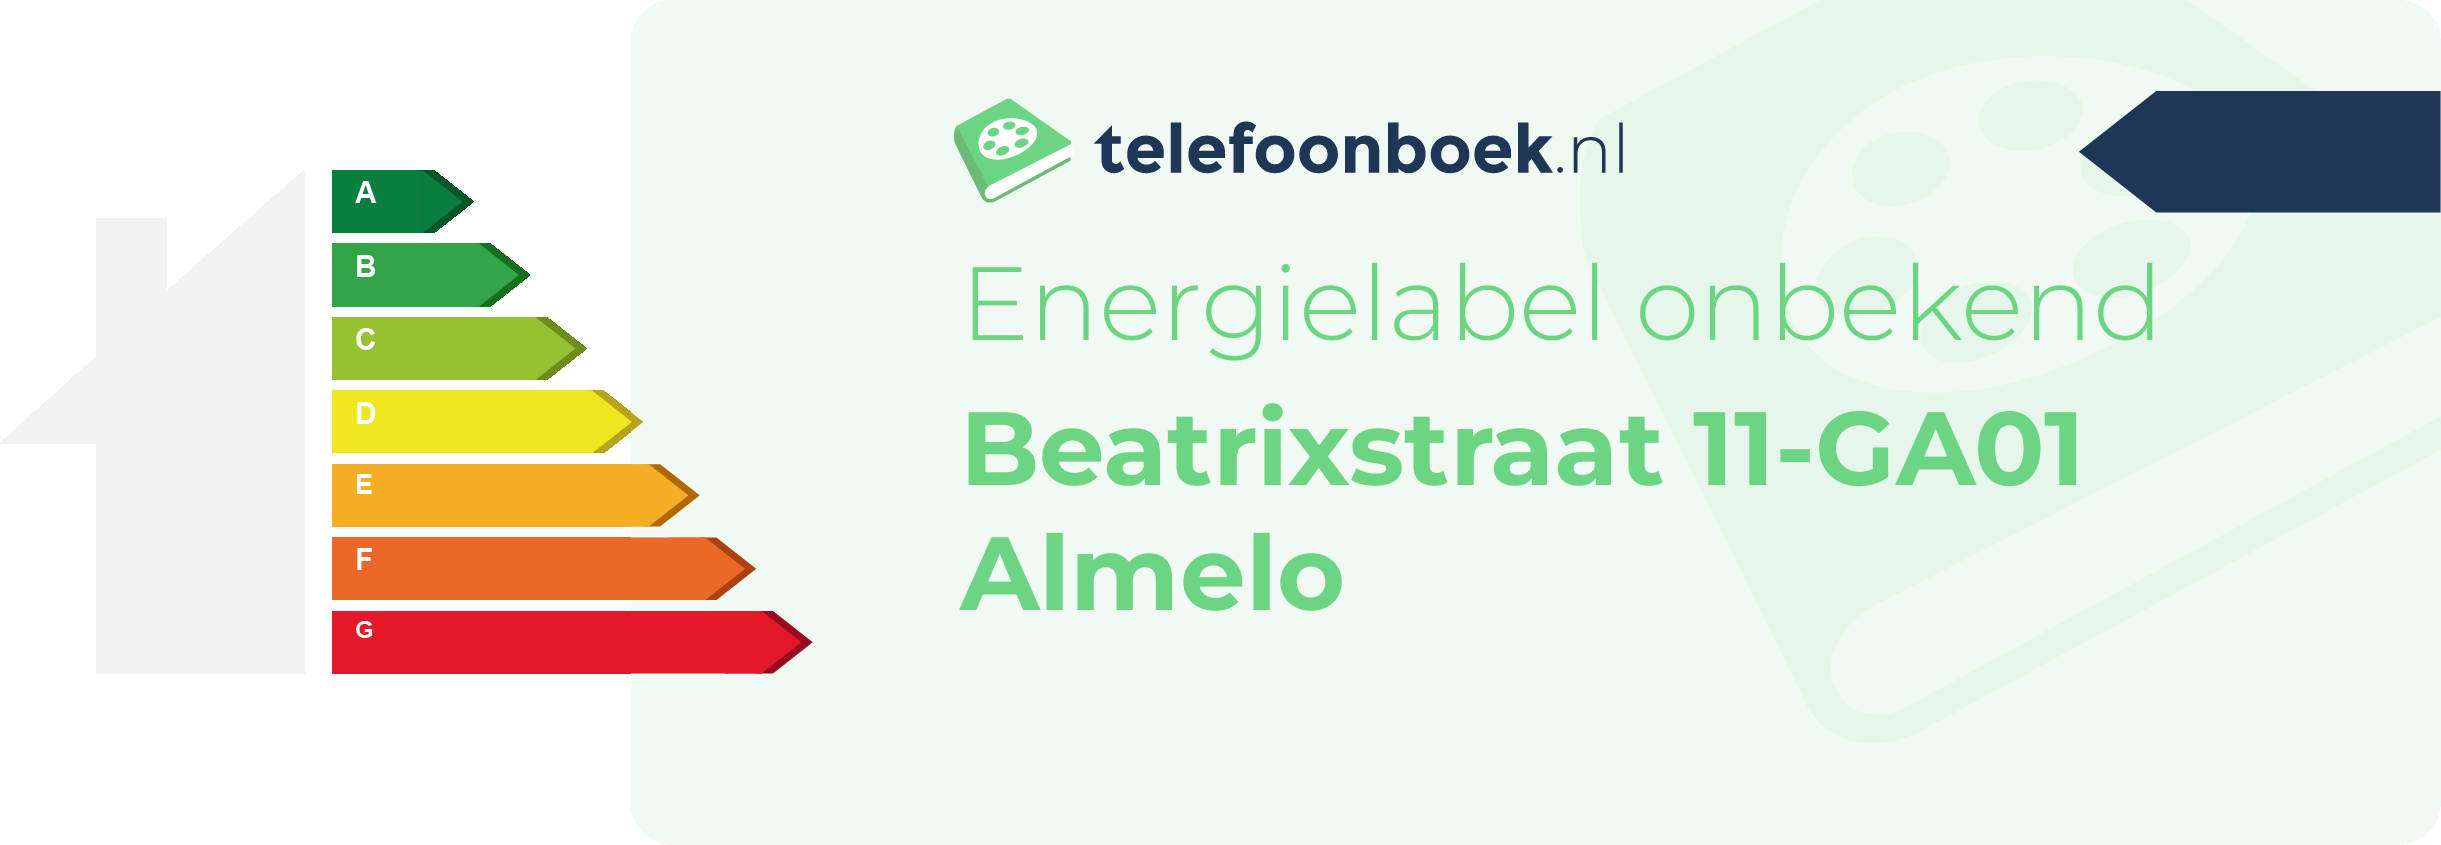 Energielabel Beatrixstraat 11-GA01 Almelo